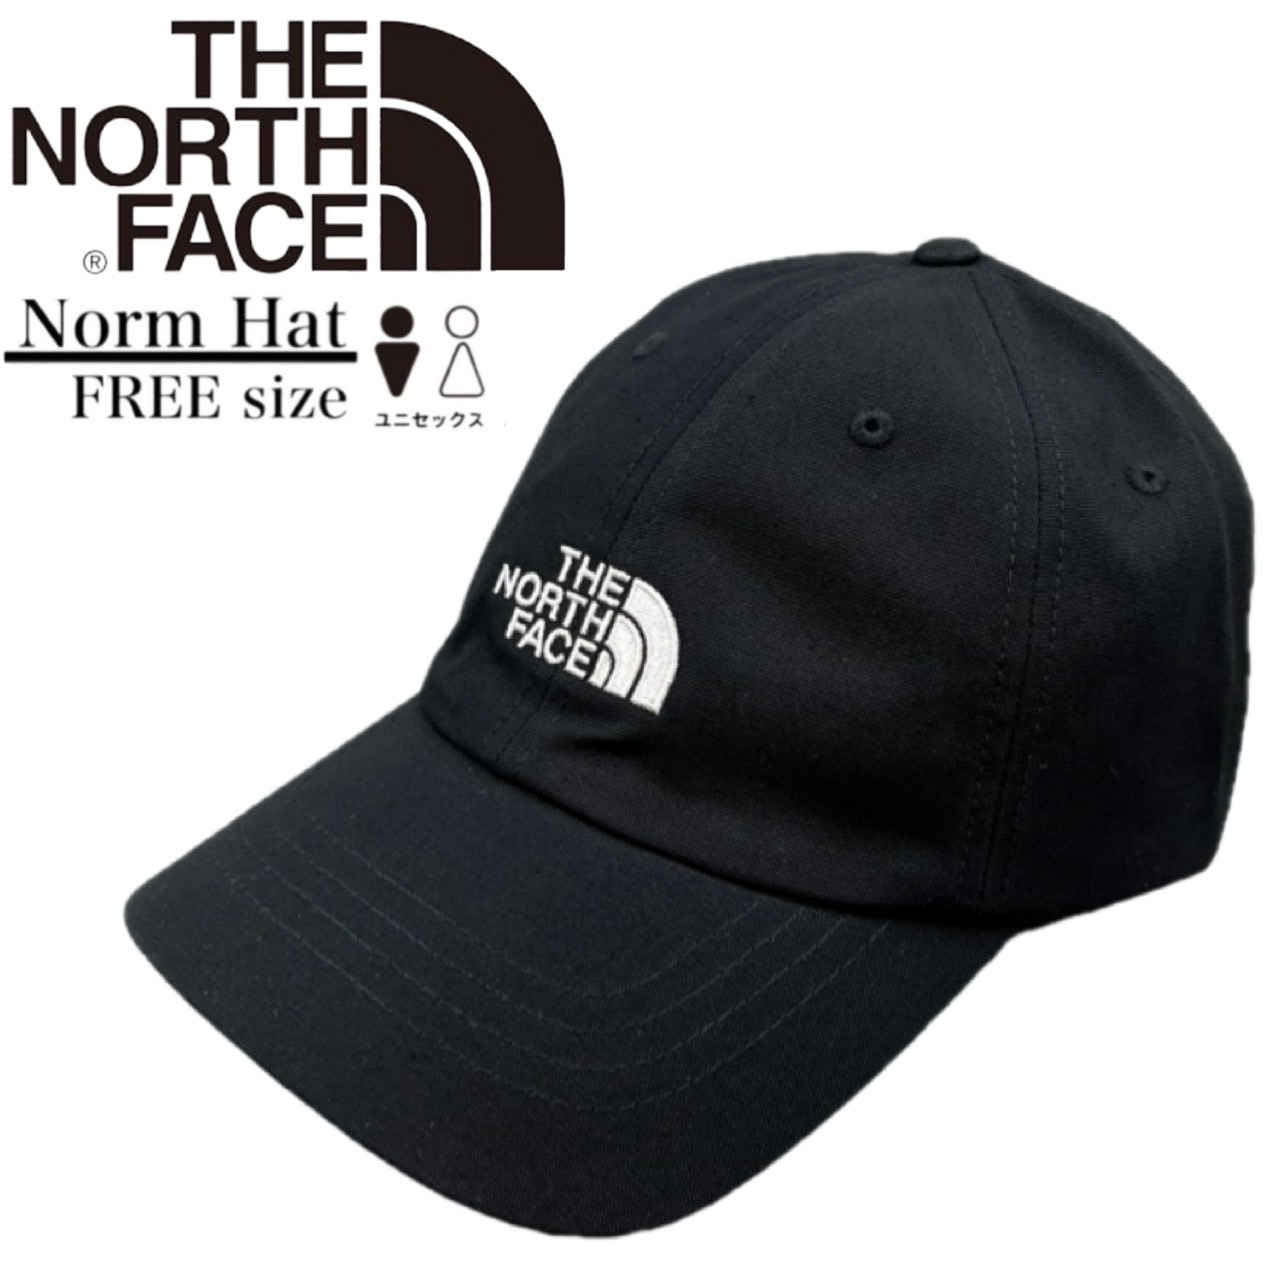 ザ ノースフェイス The North Face ノーム ハット キャップ 帽子 ワンサイズ NF0...